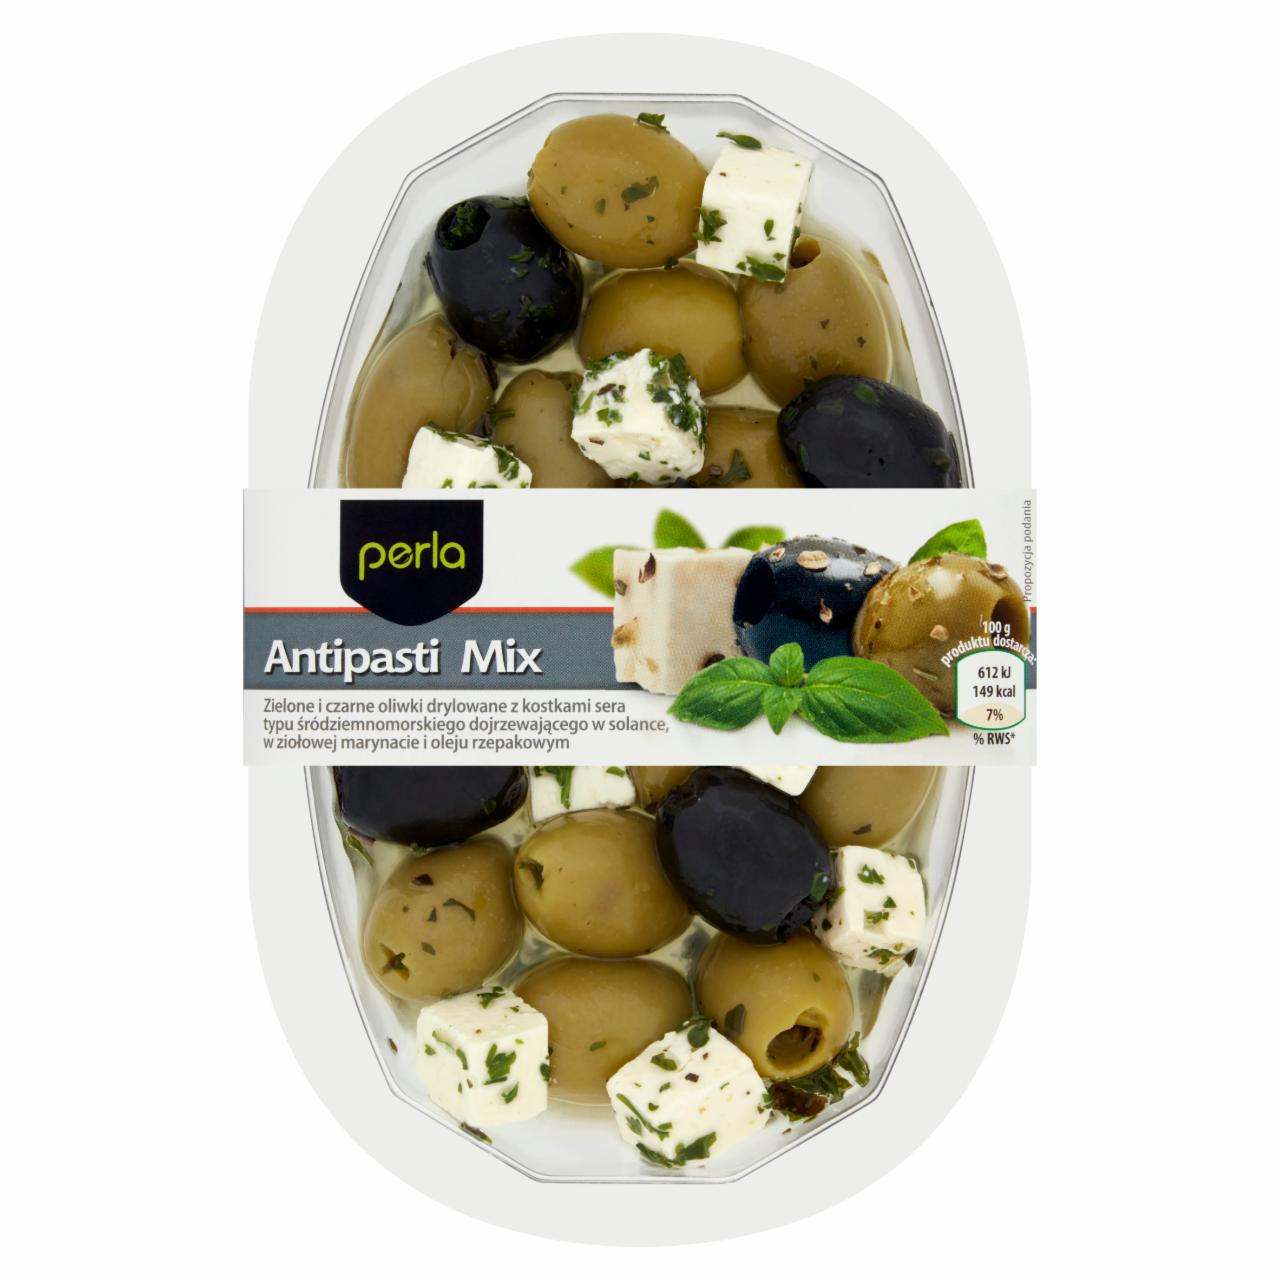 Zdjęcia - Perla Antipasti Mix Zielone i czarne oliwki drylowane z kostkami sera 200 g